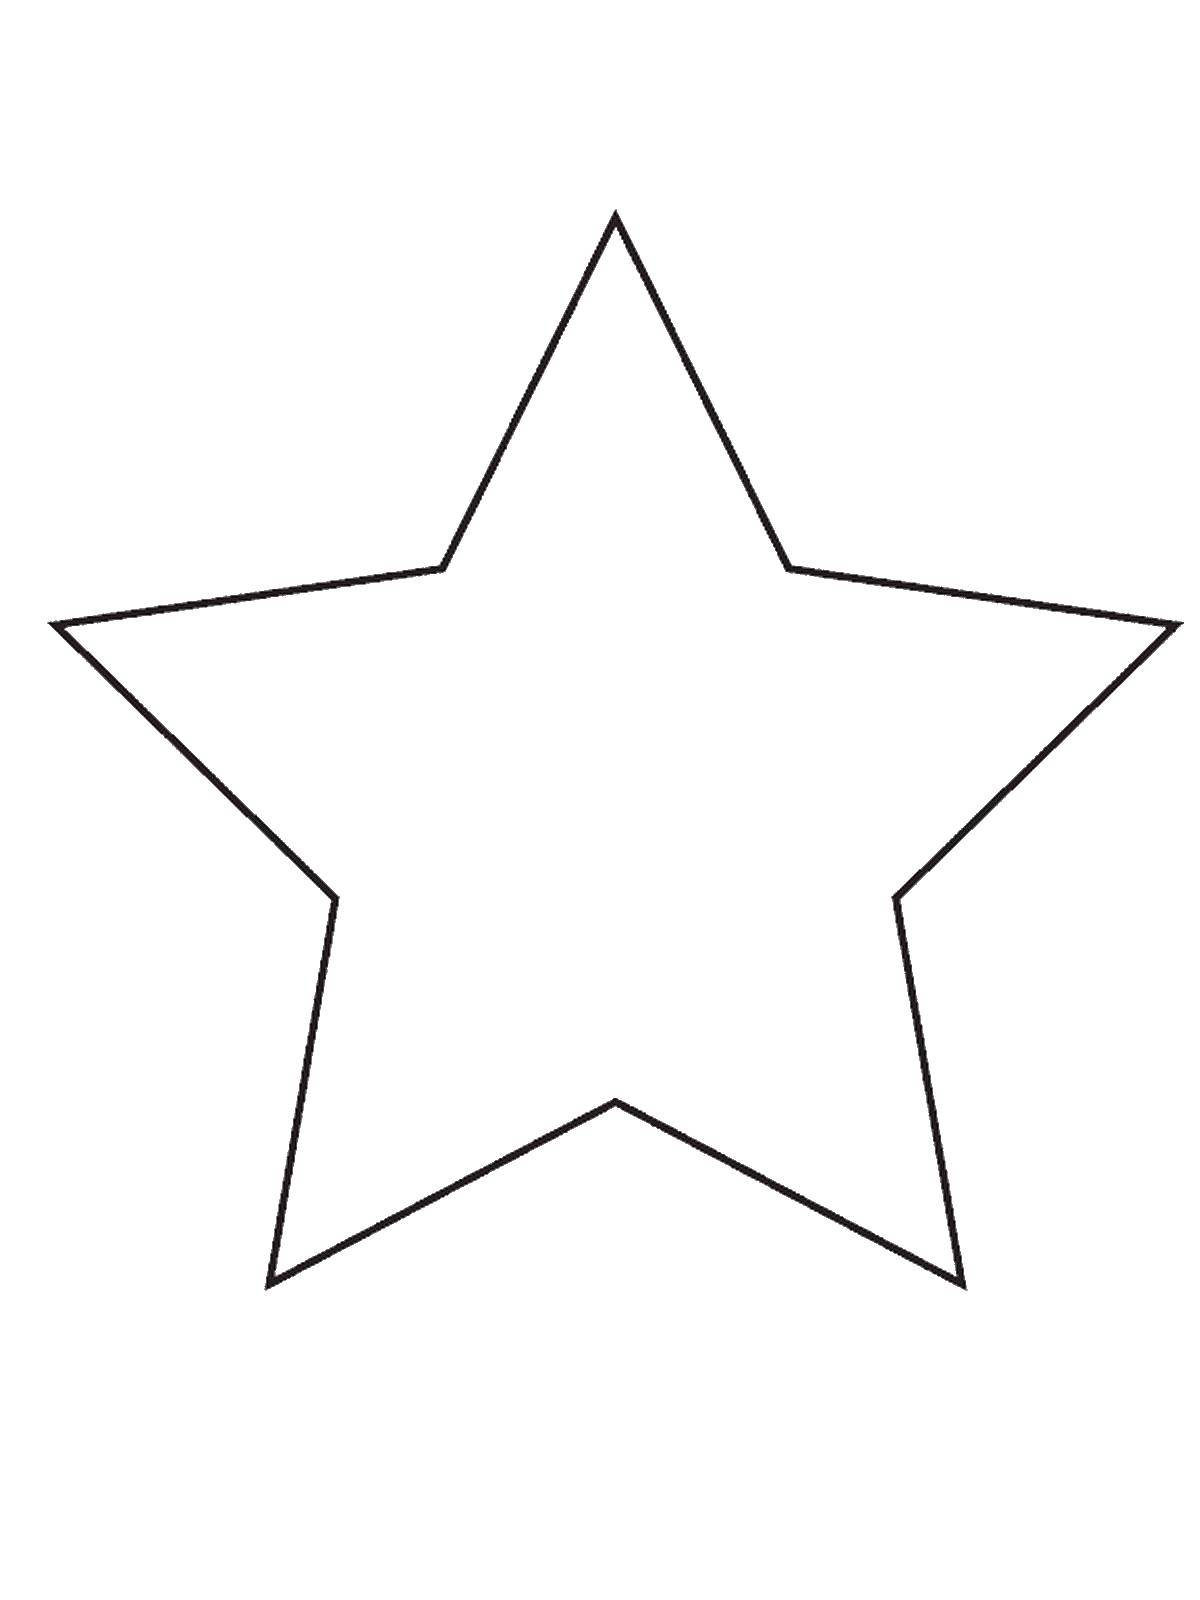 Раскраска фигур звезда, фигуры для детей (звезда)